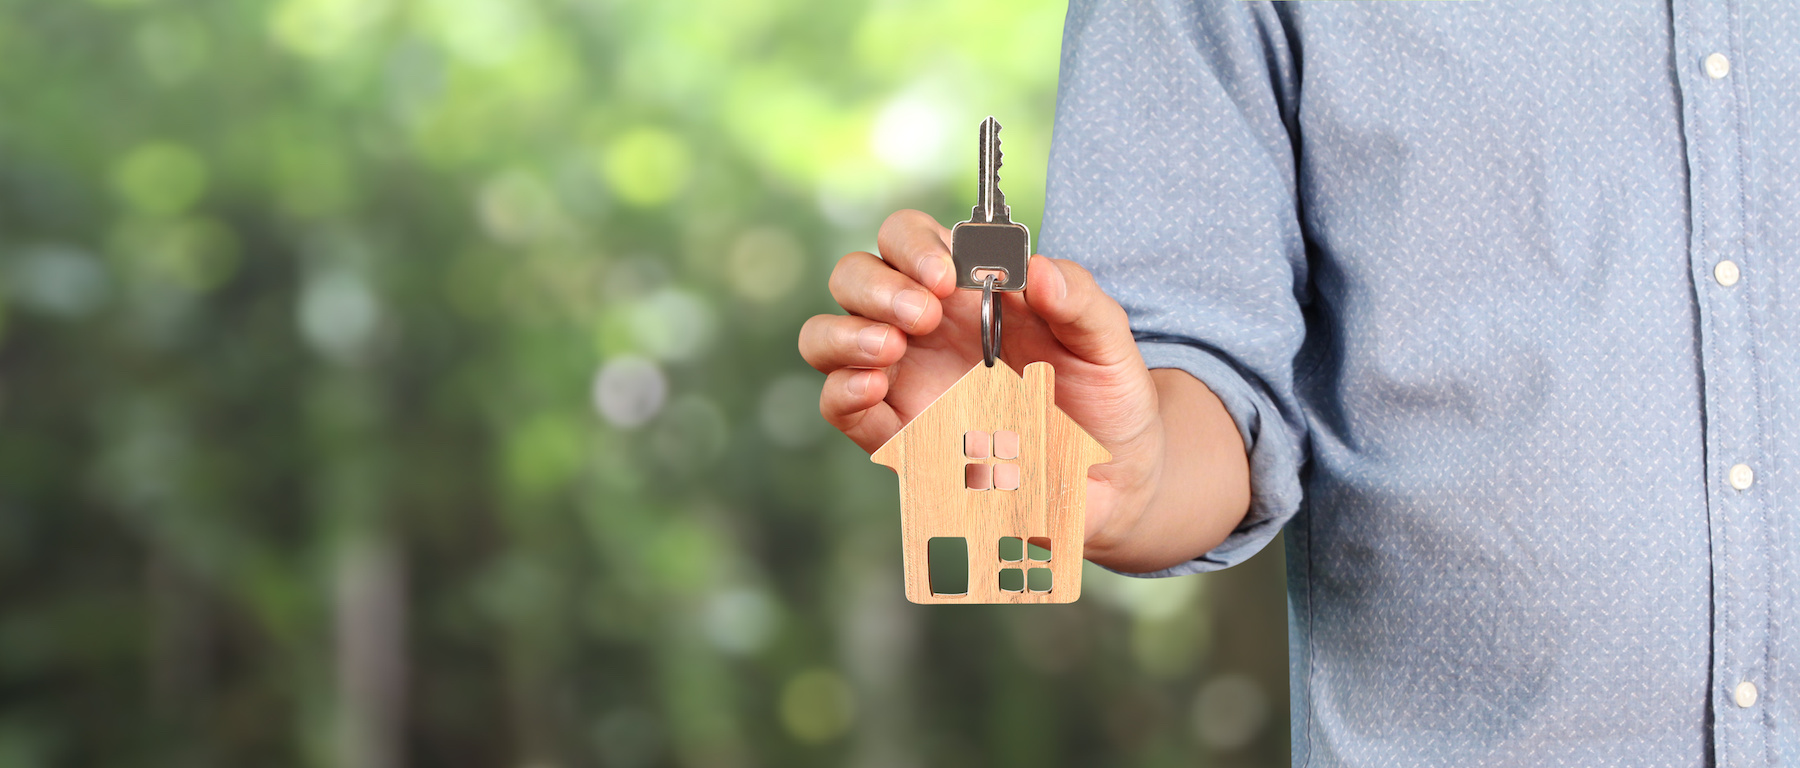 Wohnungsabnahme – Das müssen Vermieter beim Übergabeprotokoll beachten